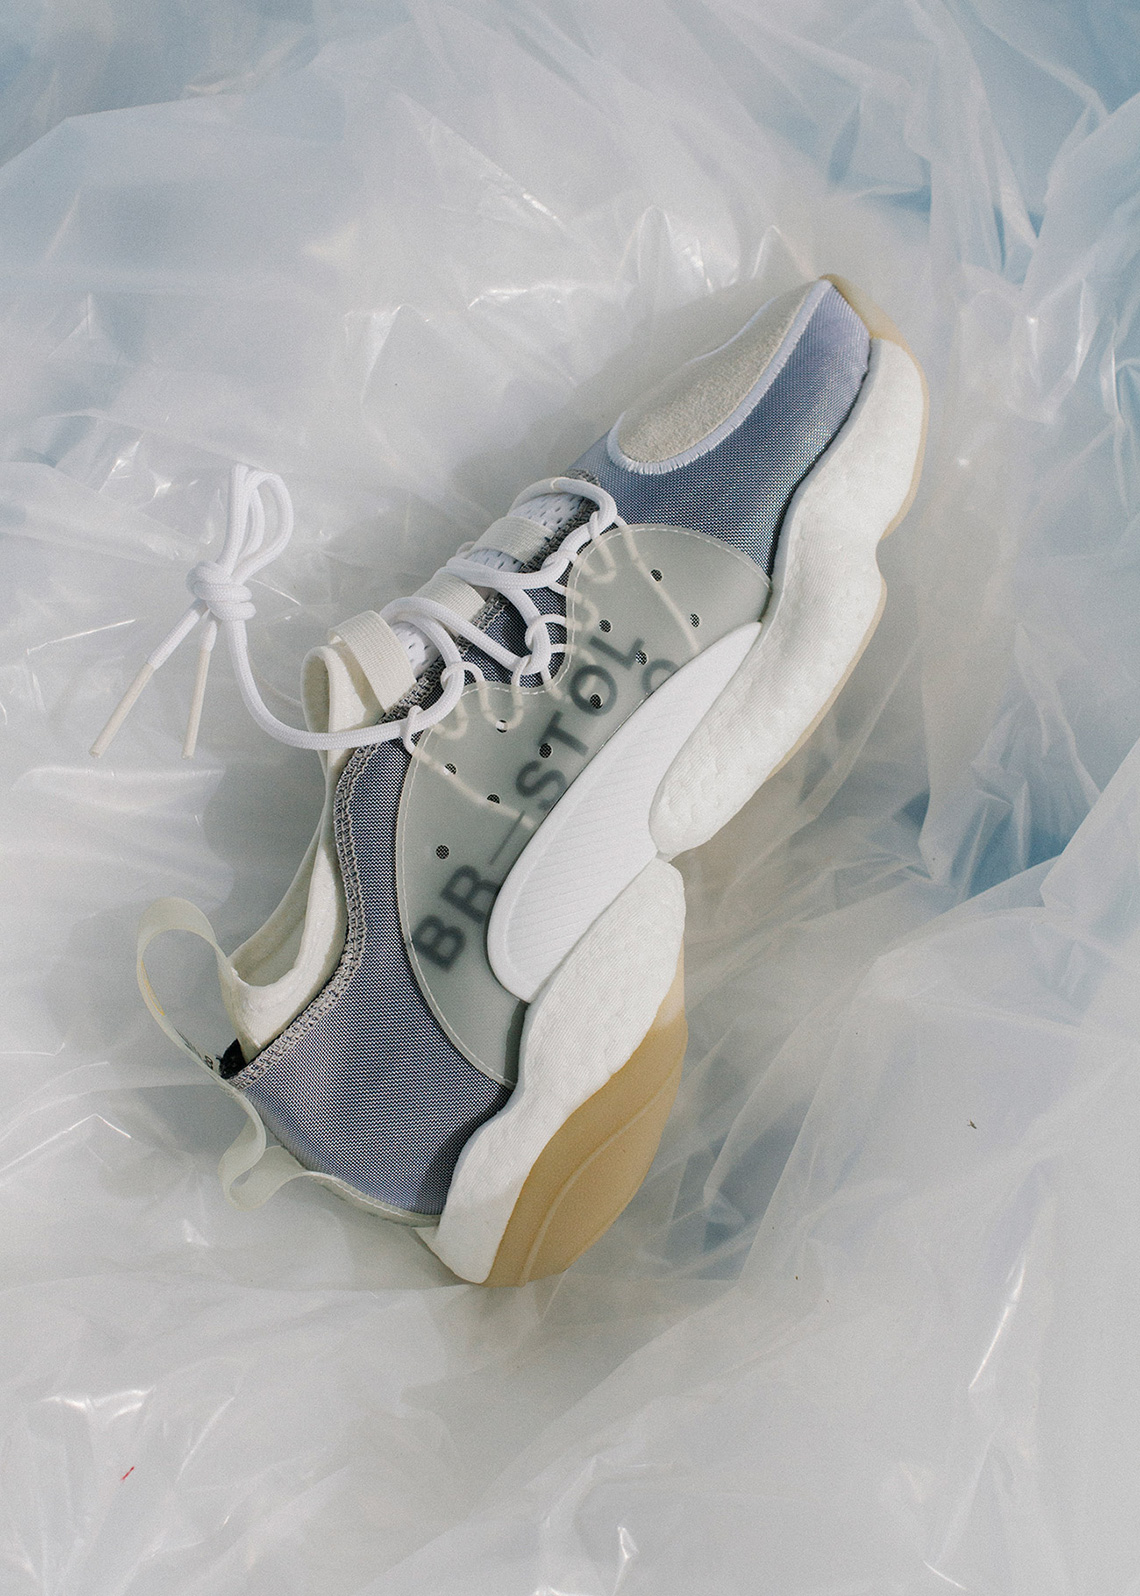 Aan het liegen maak je geïrriteerd telegram Bristol Studio adidas Crazy BYW The Shoe Surgeon Release Info |  SneakerNews.com